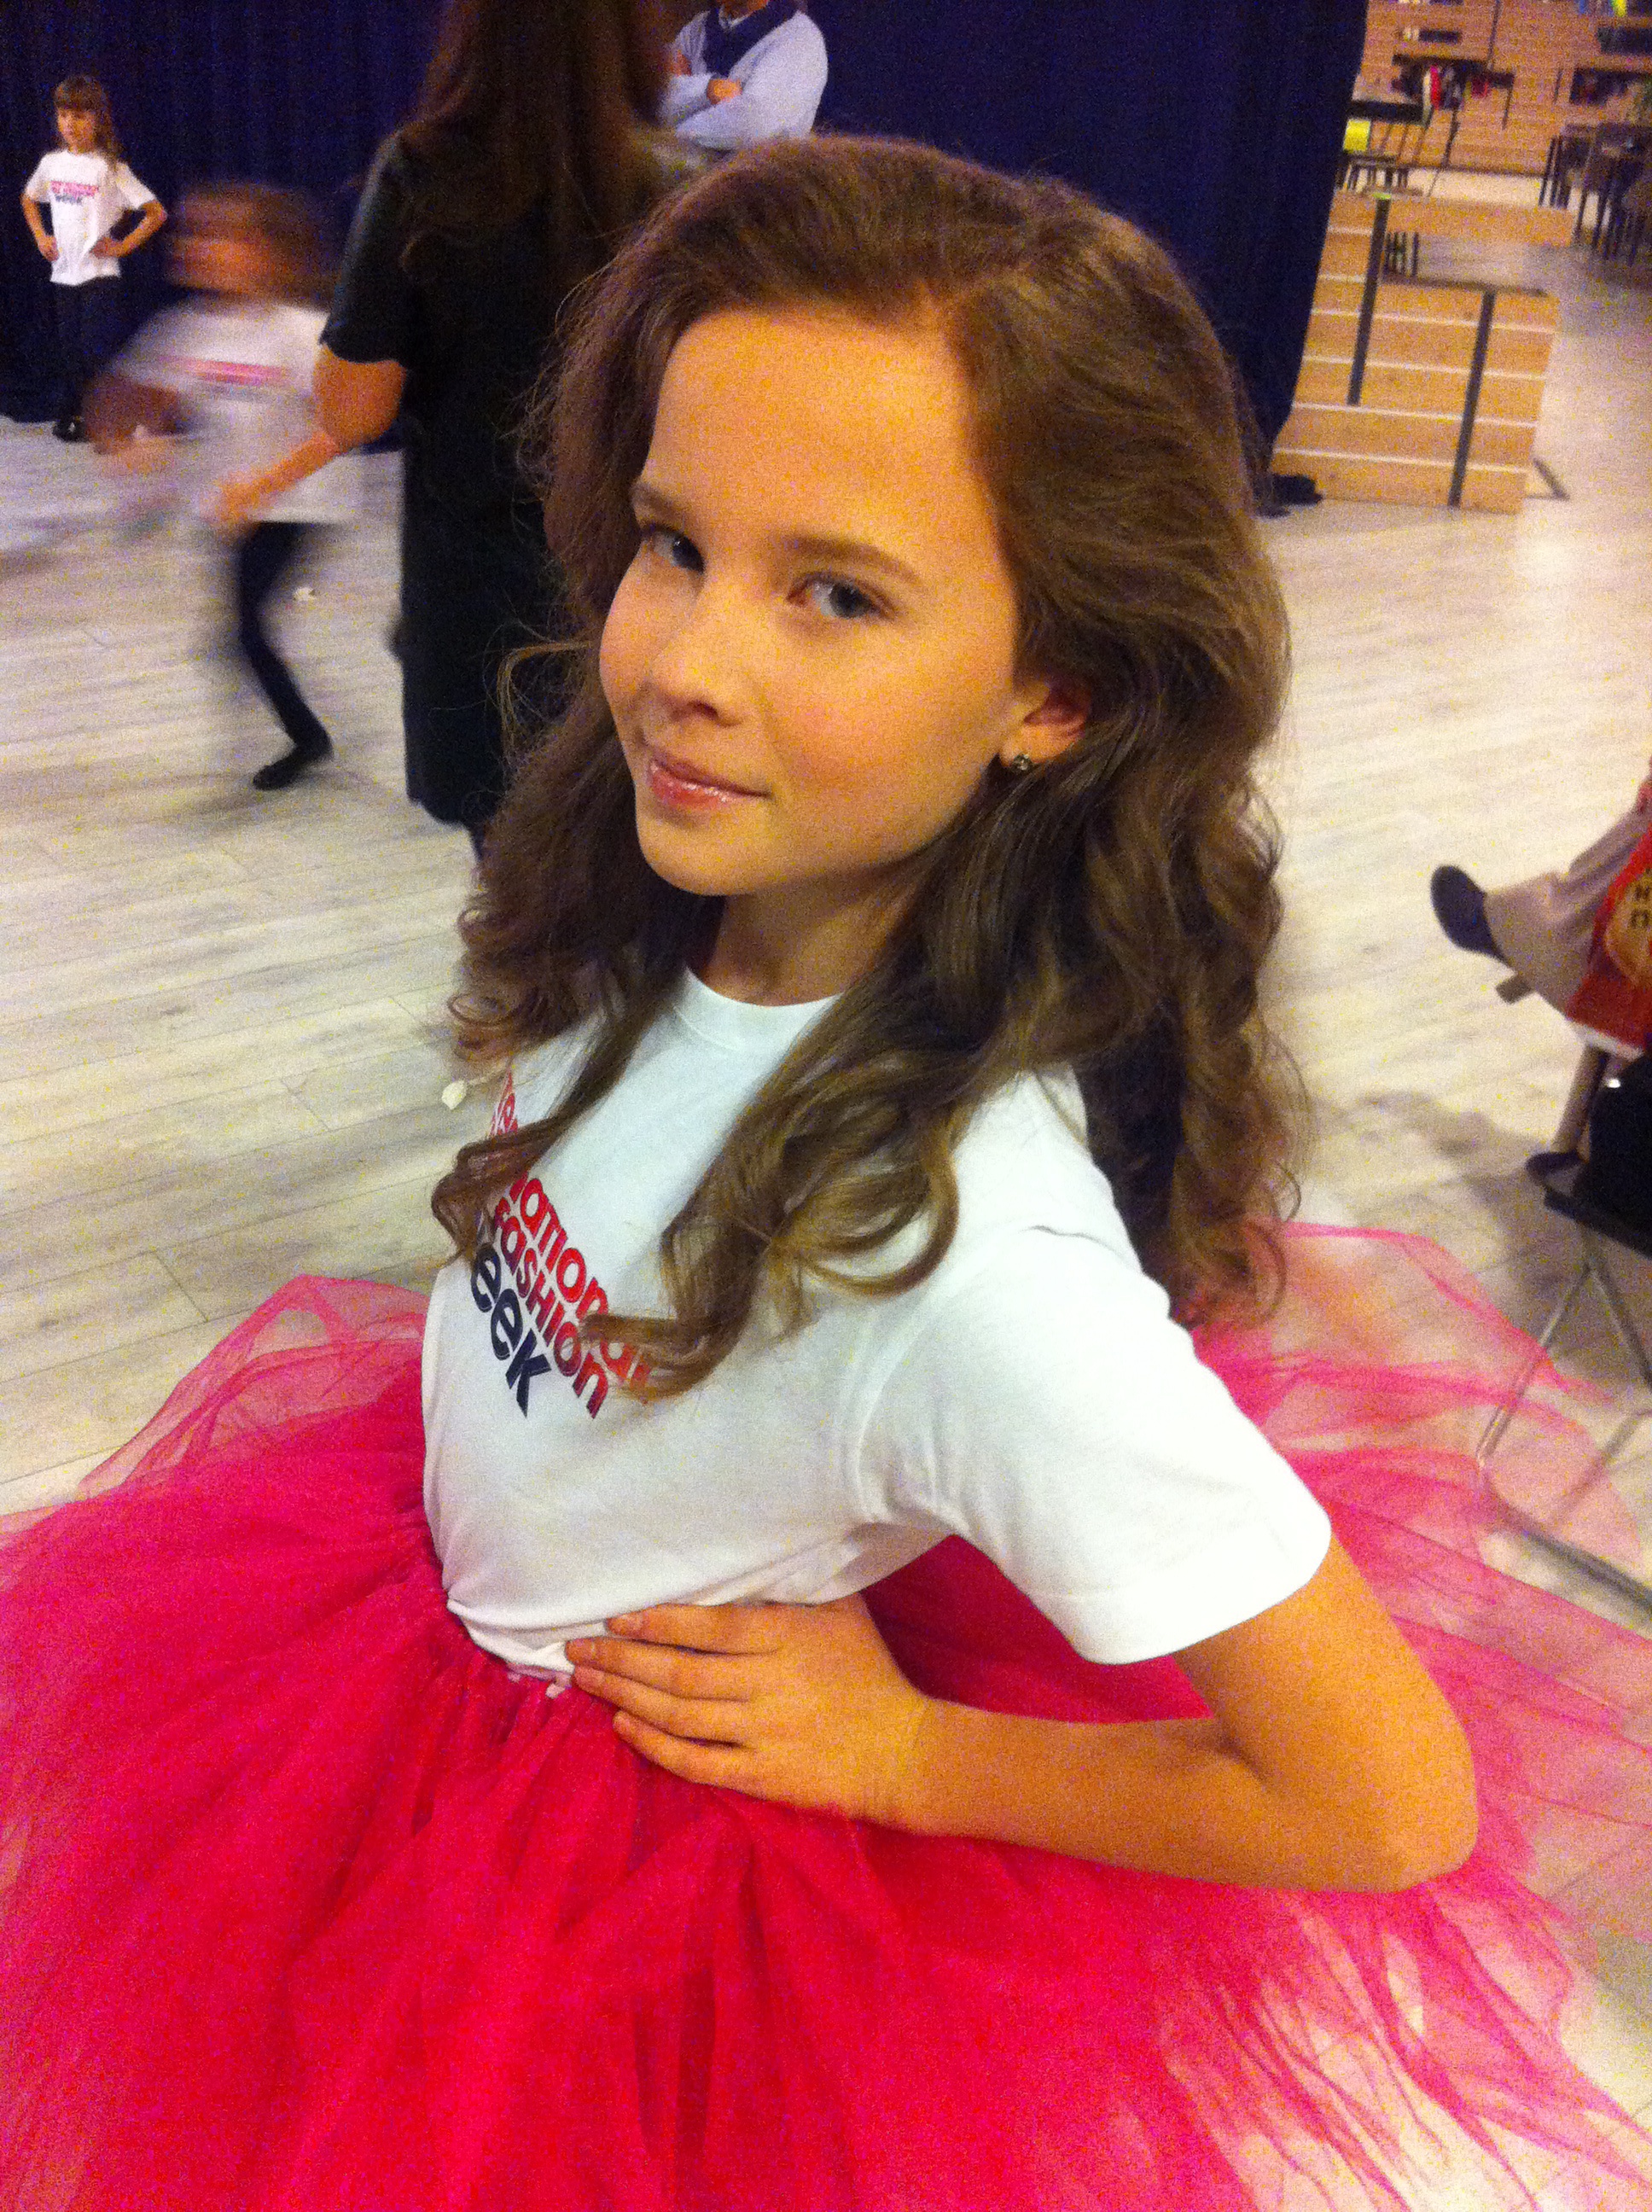 Полина Голубовская - аккредитованная модель для участия в подиумных показах на Междунродной Детской Неделе моды